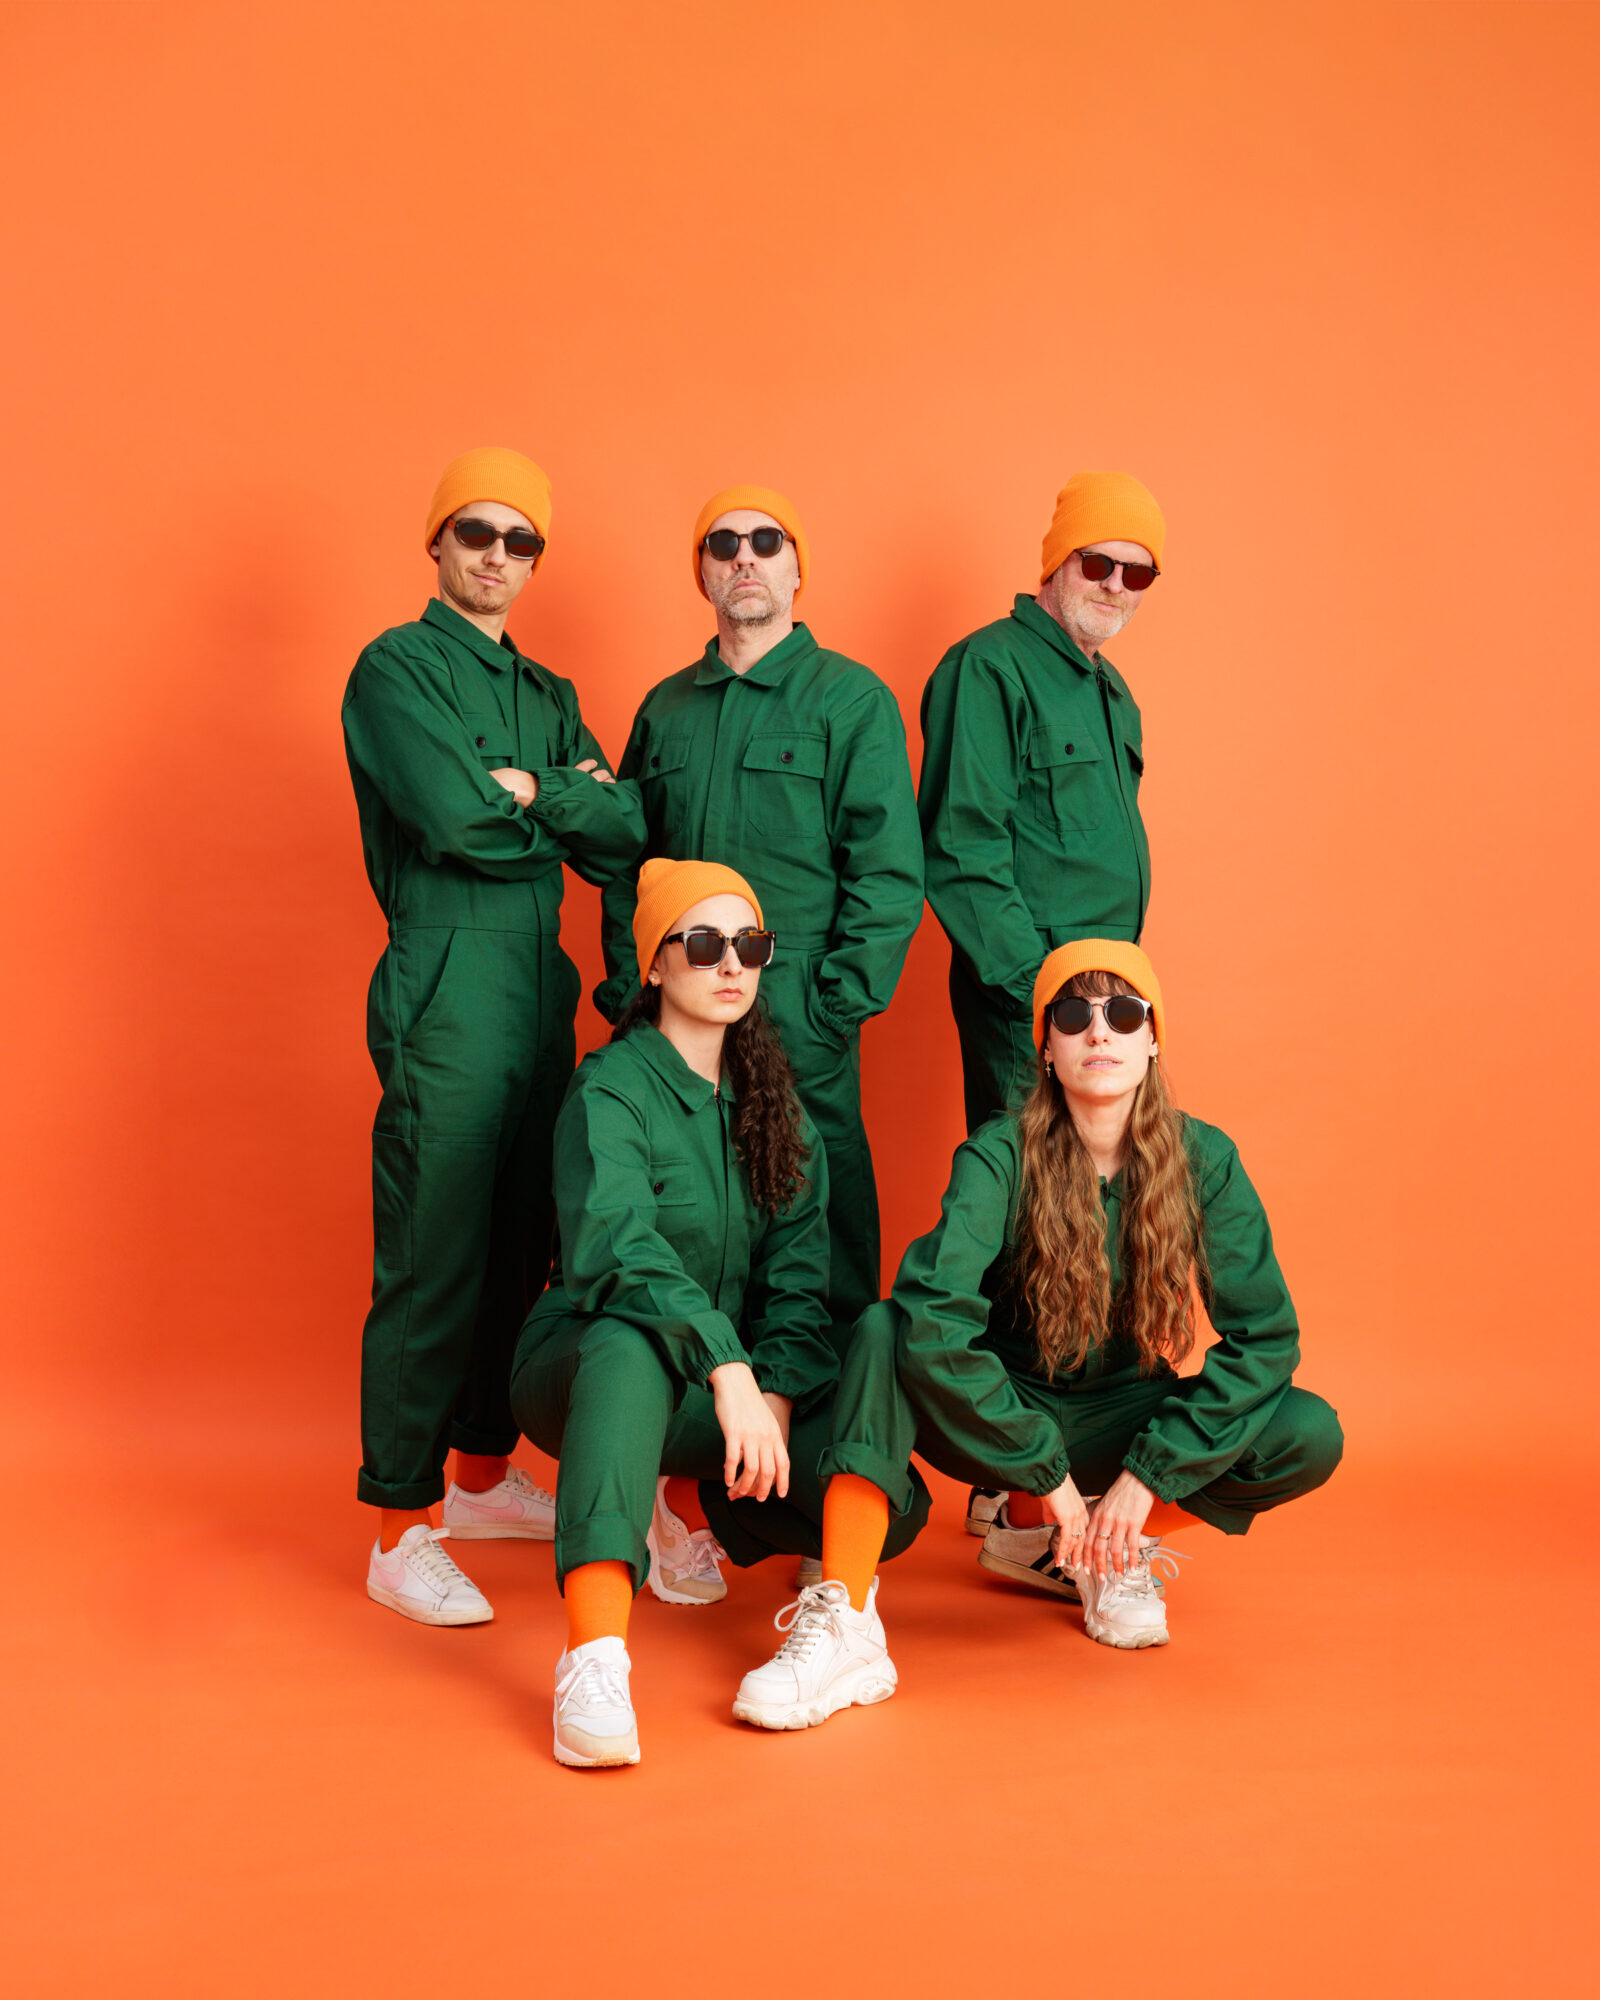 équipe d'Oioo Studio, photographe professionnel à Nantes. 5 personnes en salopettes vertes sur fond orange